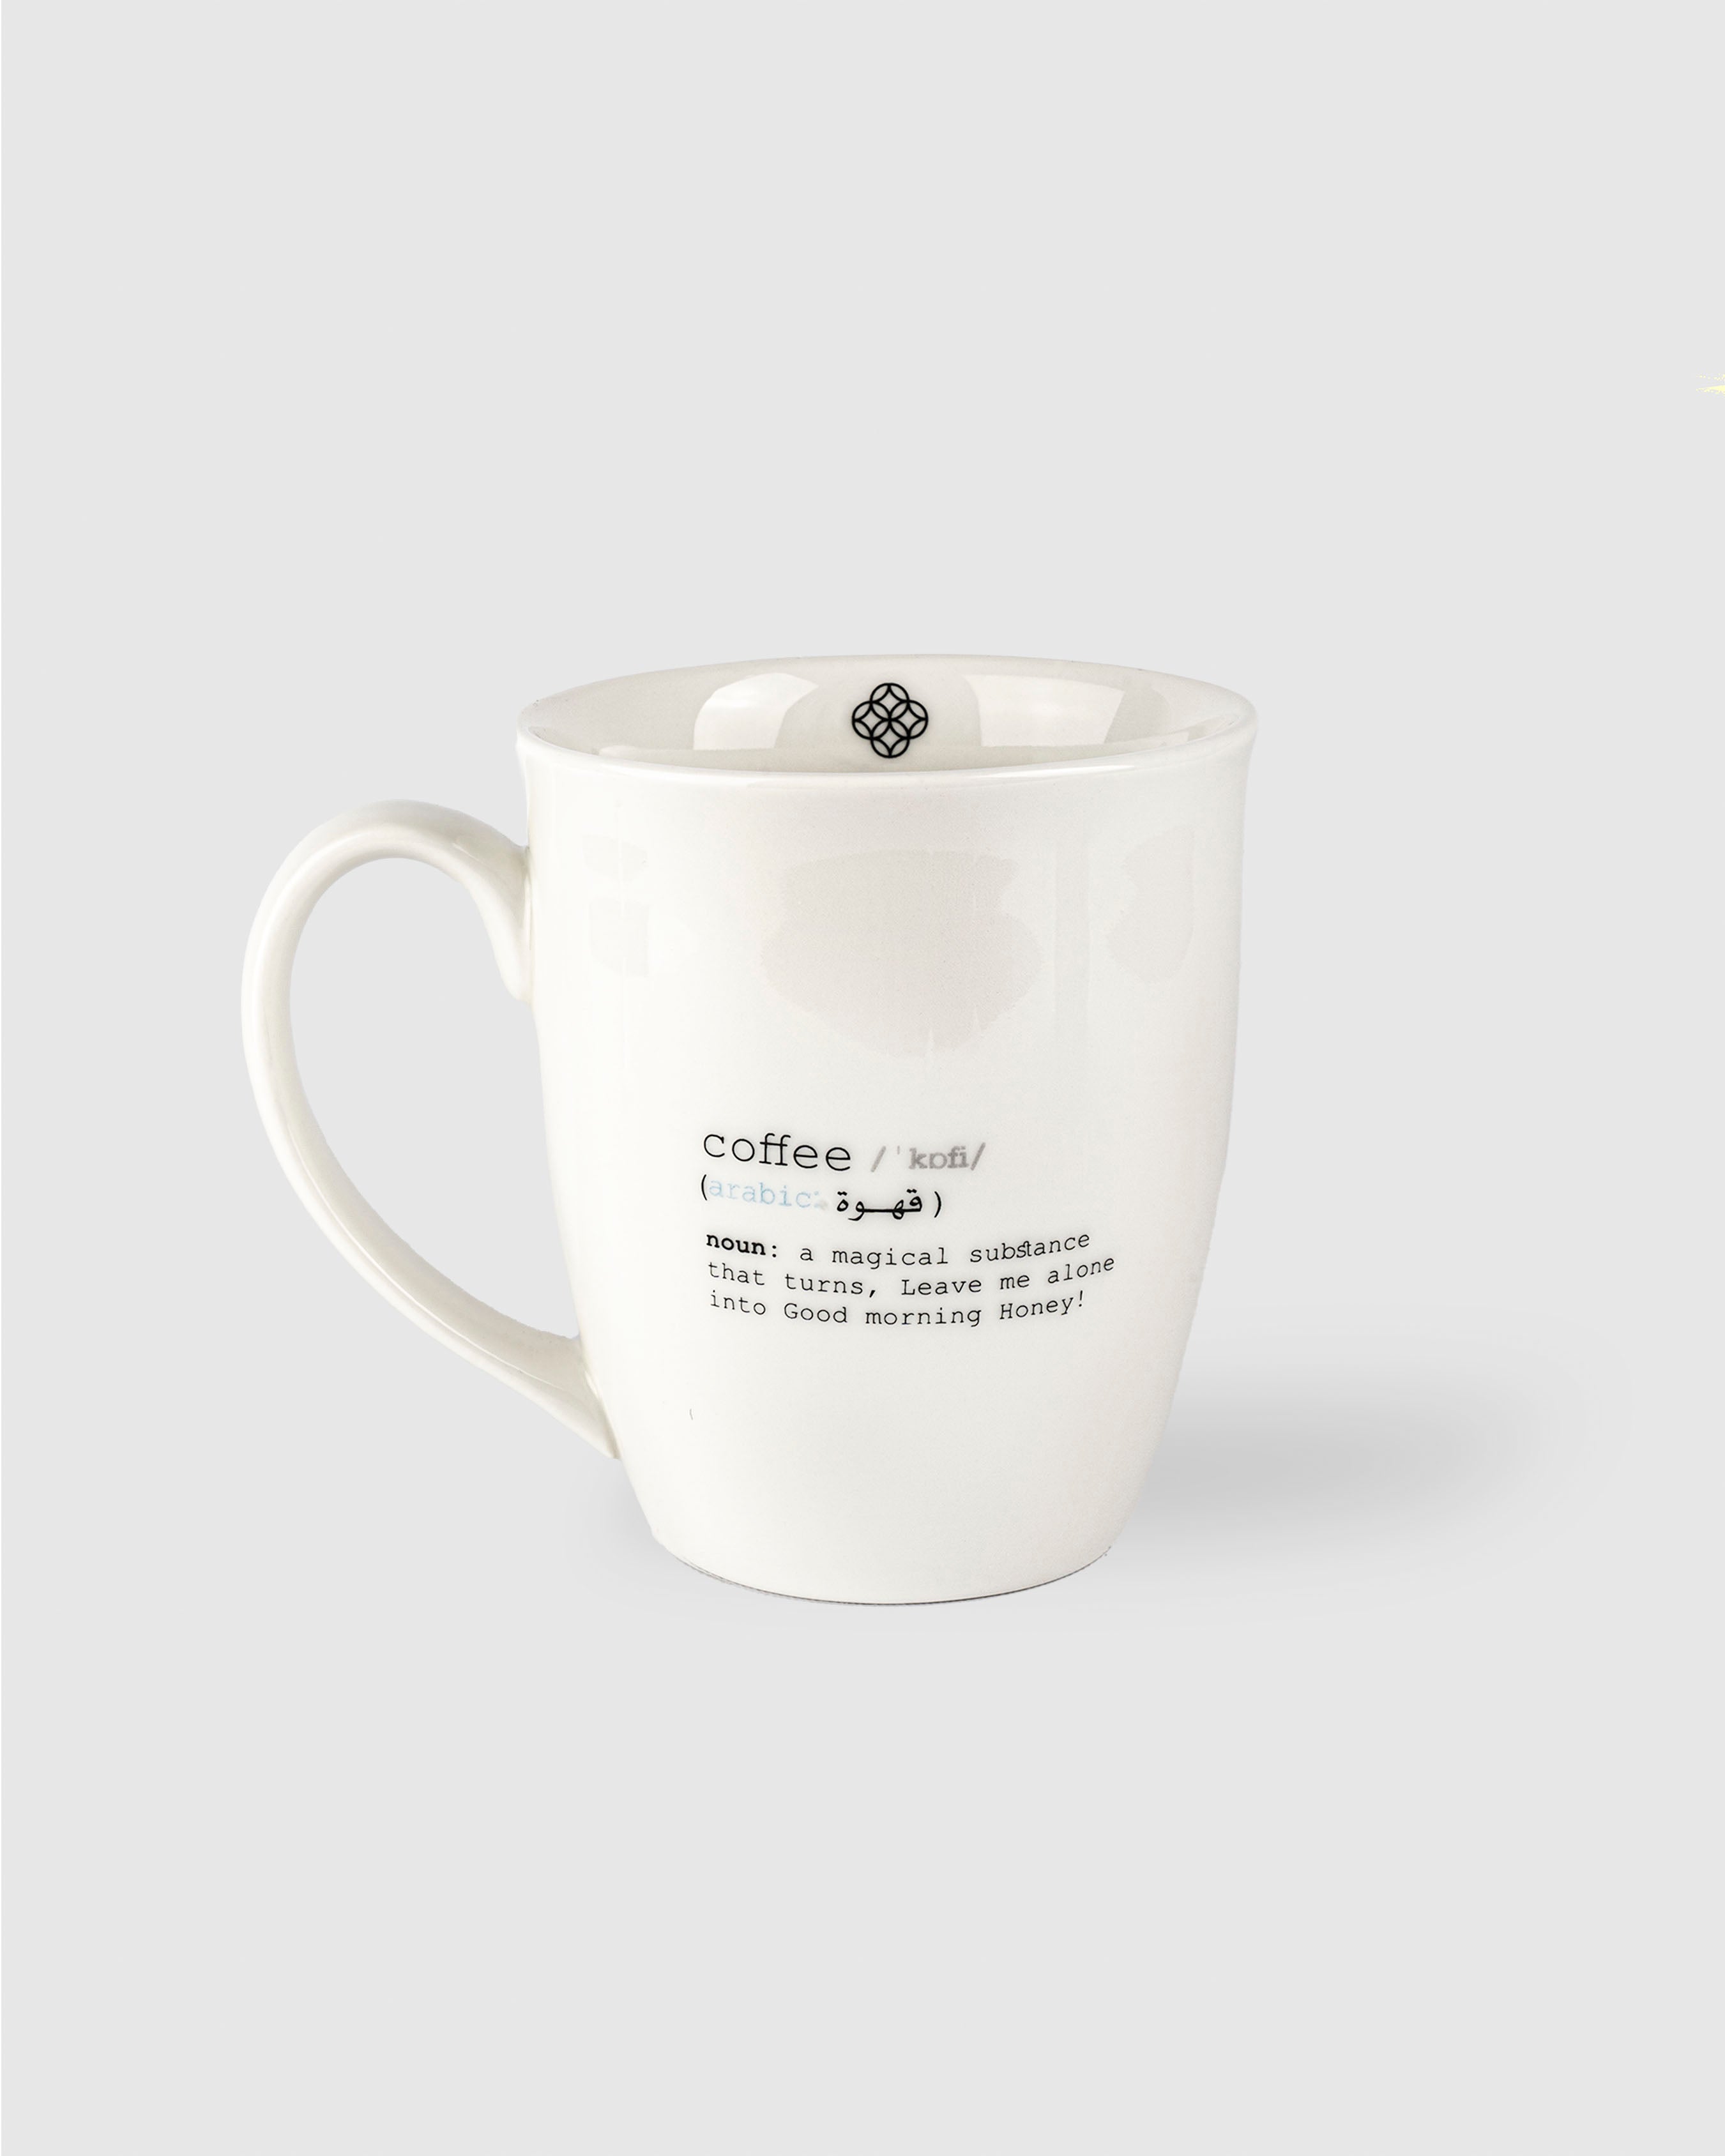 Coffee Definition Mug